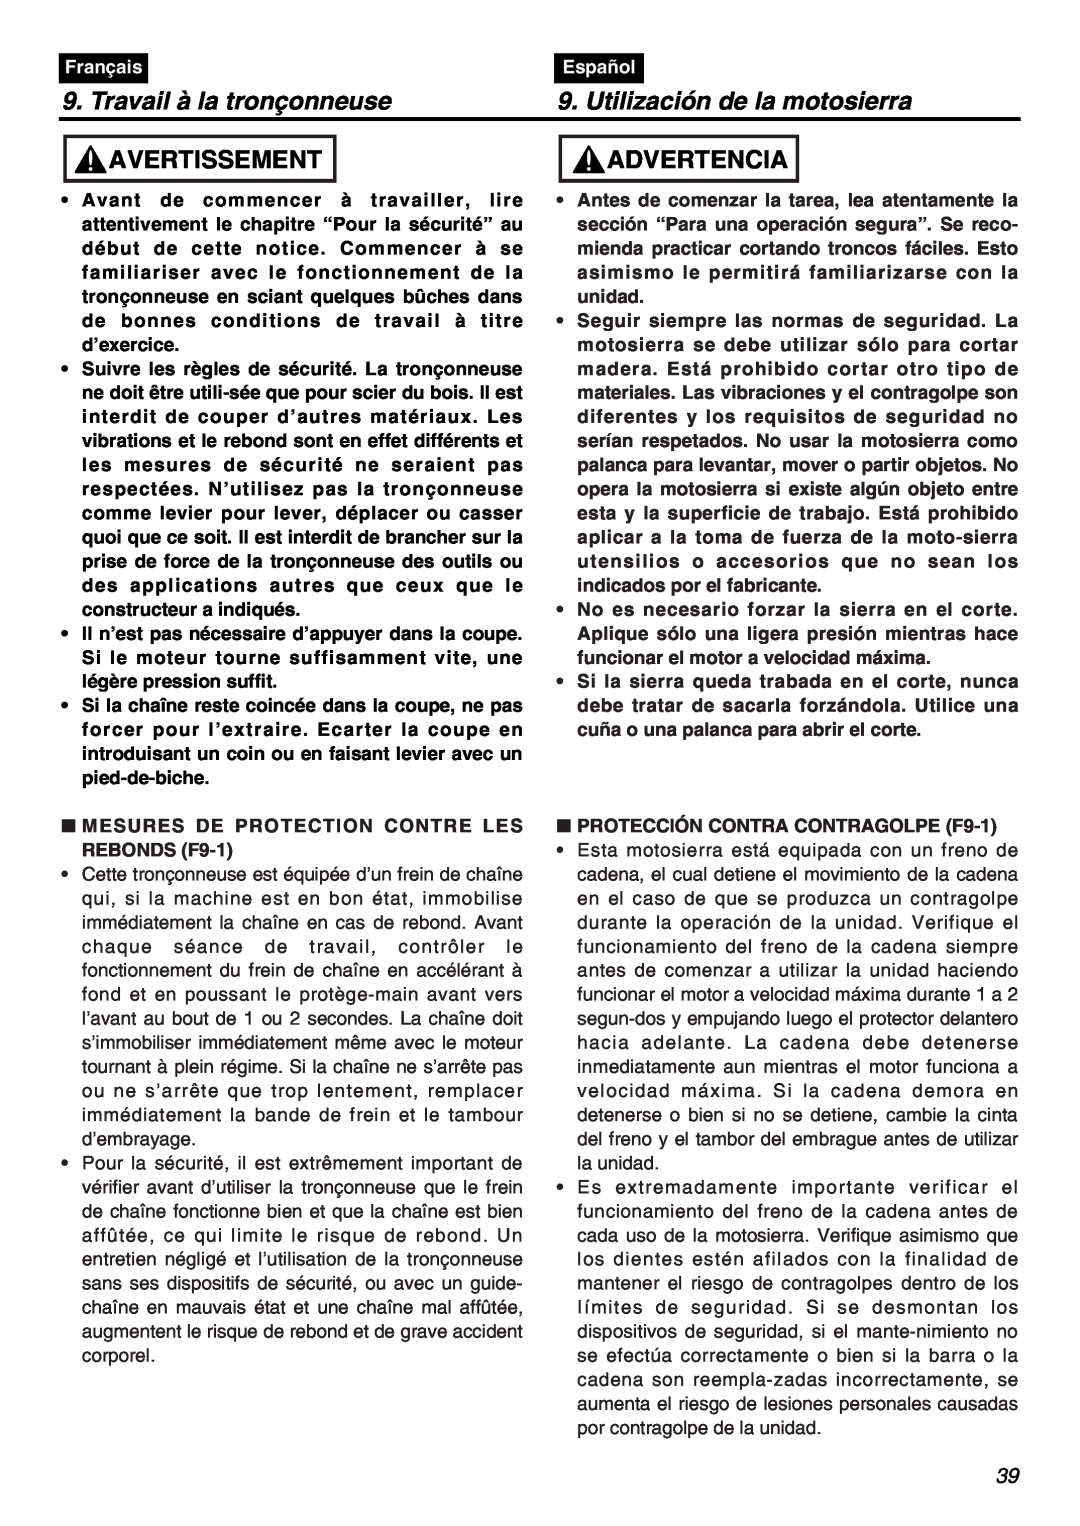 RedMax GZ400 manual Travail à la tronçonneuse, Utilización de la motosierra, Avertissement, Advertencia, Français, Español 